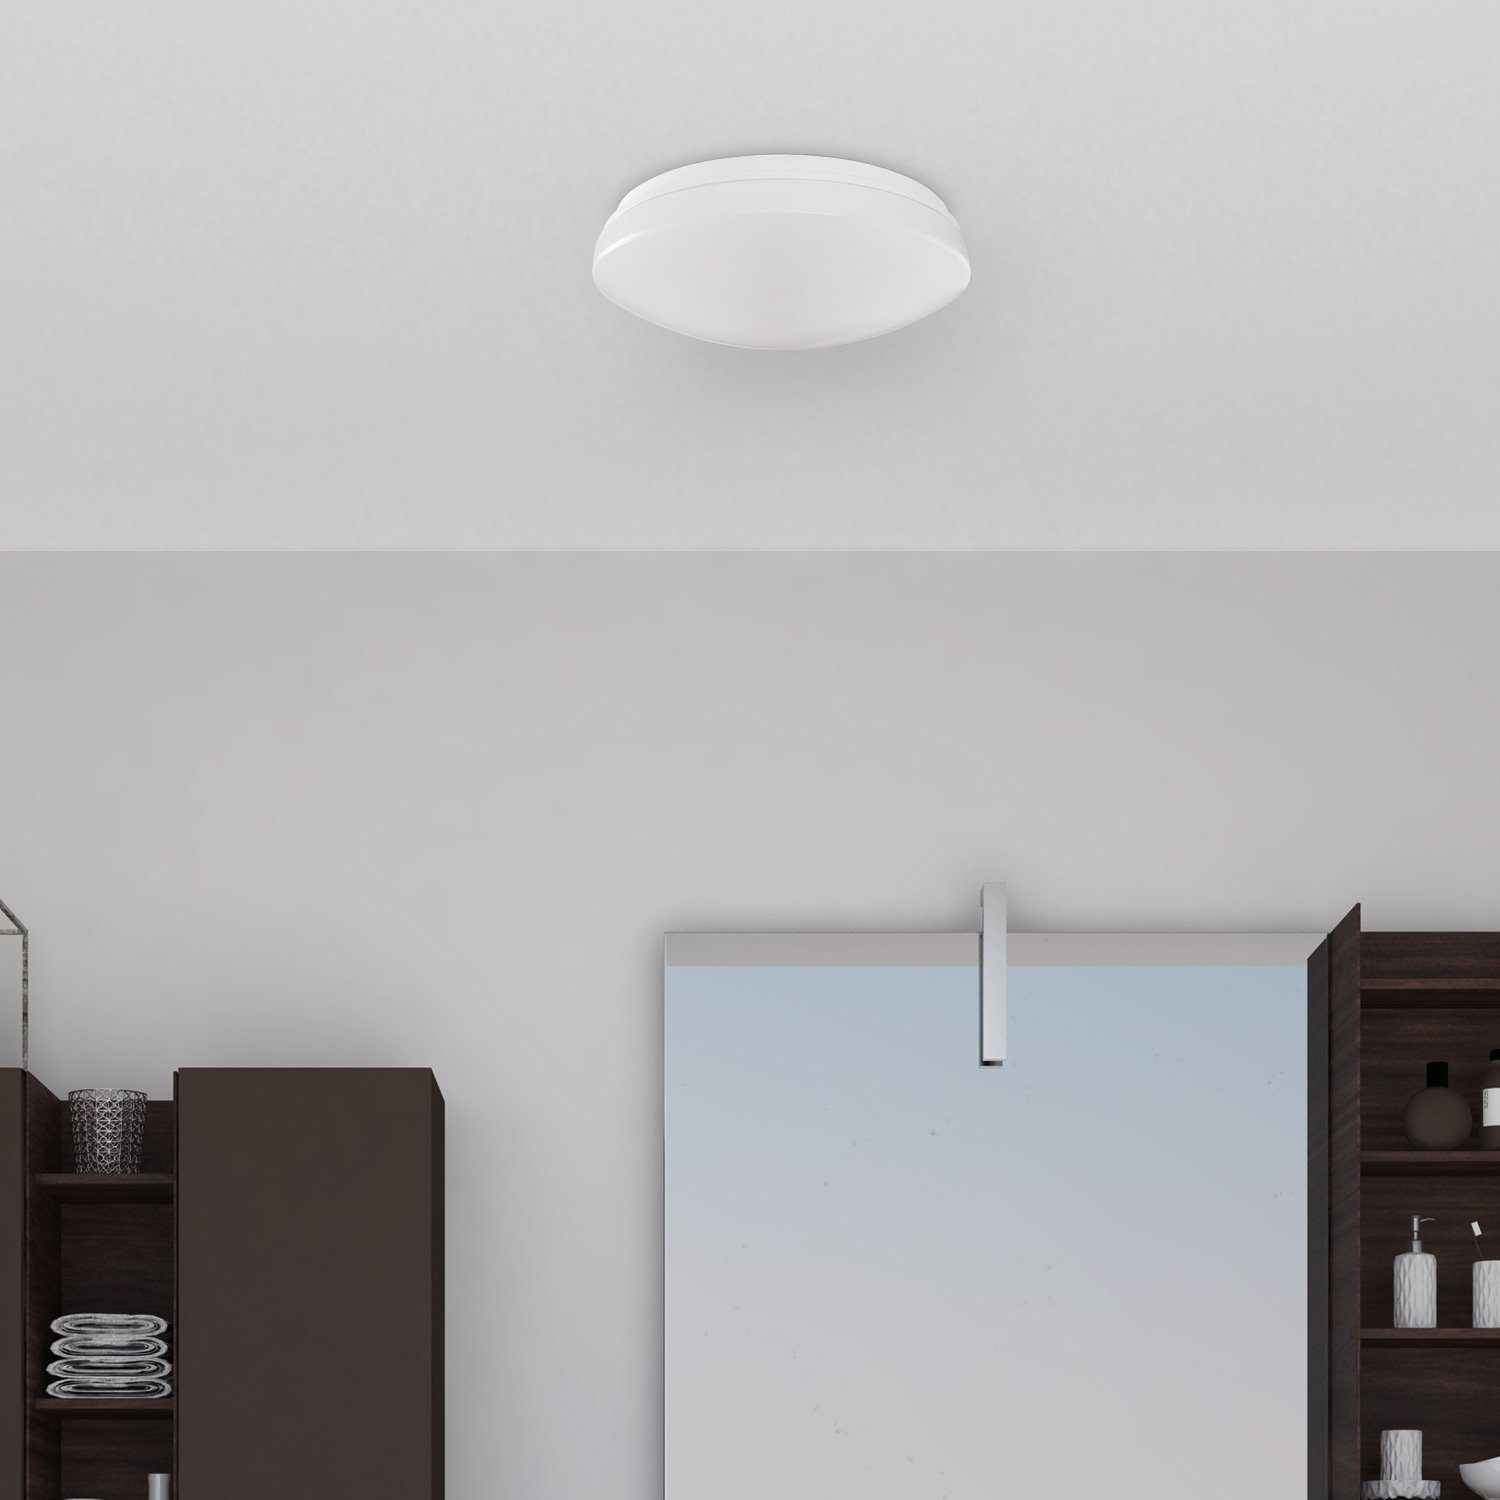 Weiß Wandleuchte wechselbar, dimmbar Wasserfest Bad Paco KENU, LED Deckenleuchte Wohnzimmer Lampe LED Warmweiß, IP44 Home